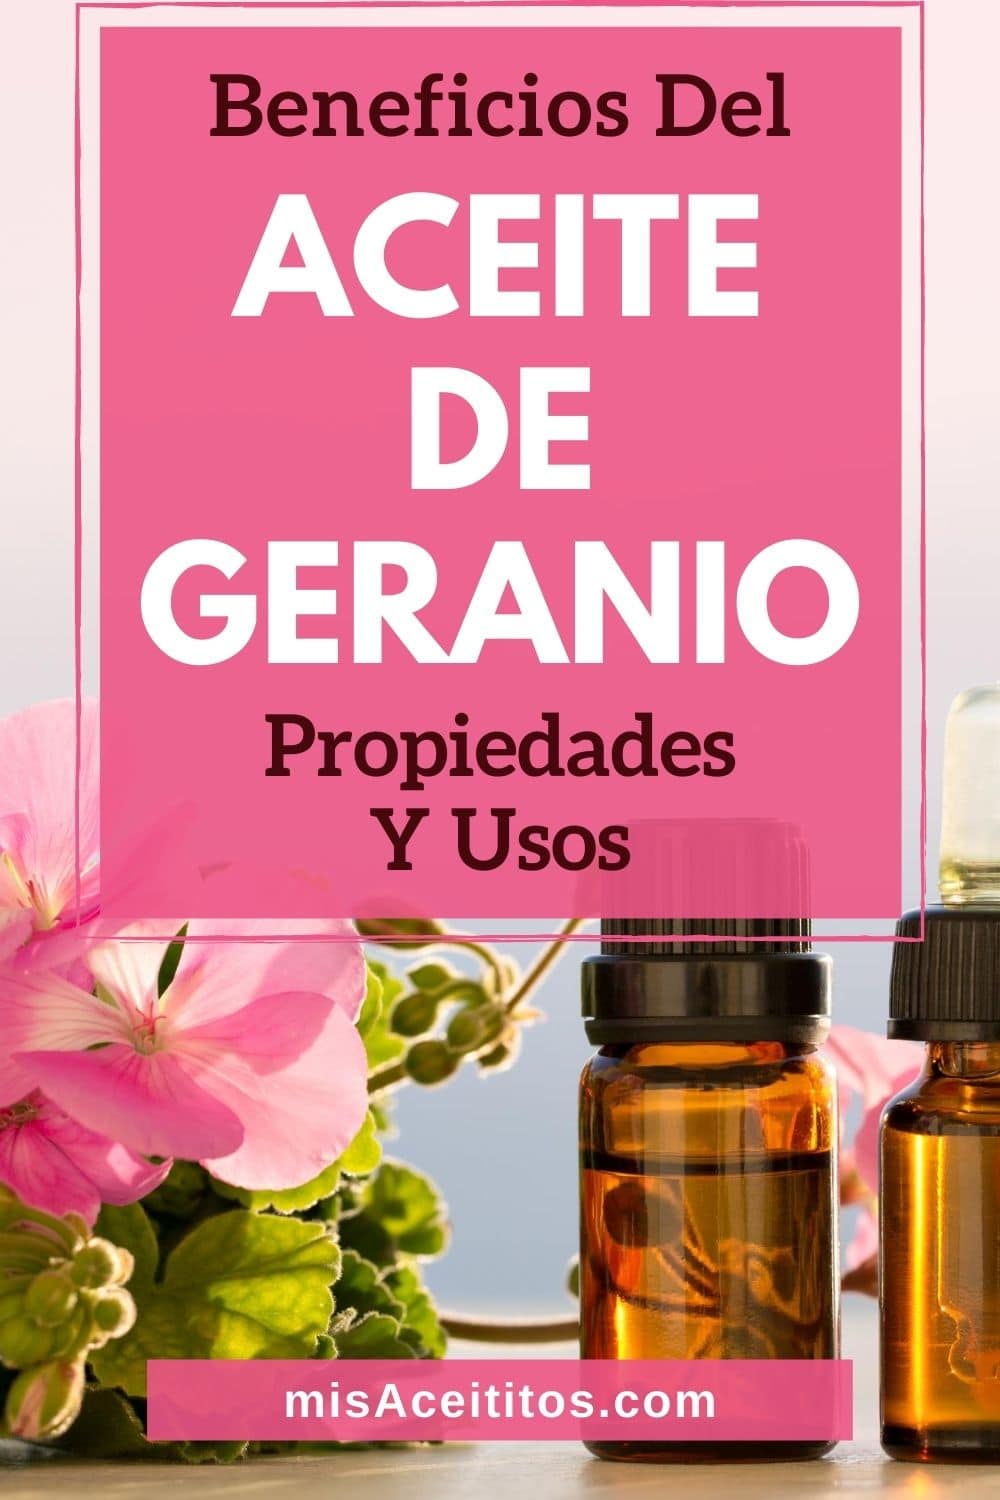 Aceite esencial de geranio y sus fabulosas propiedades, beneficios y usos